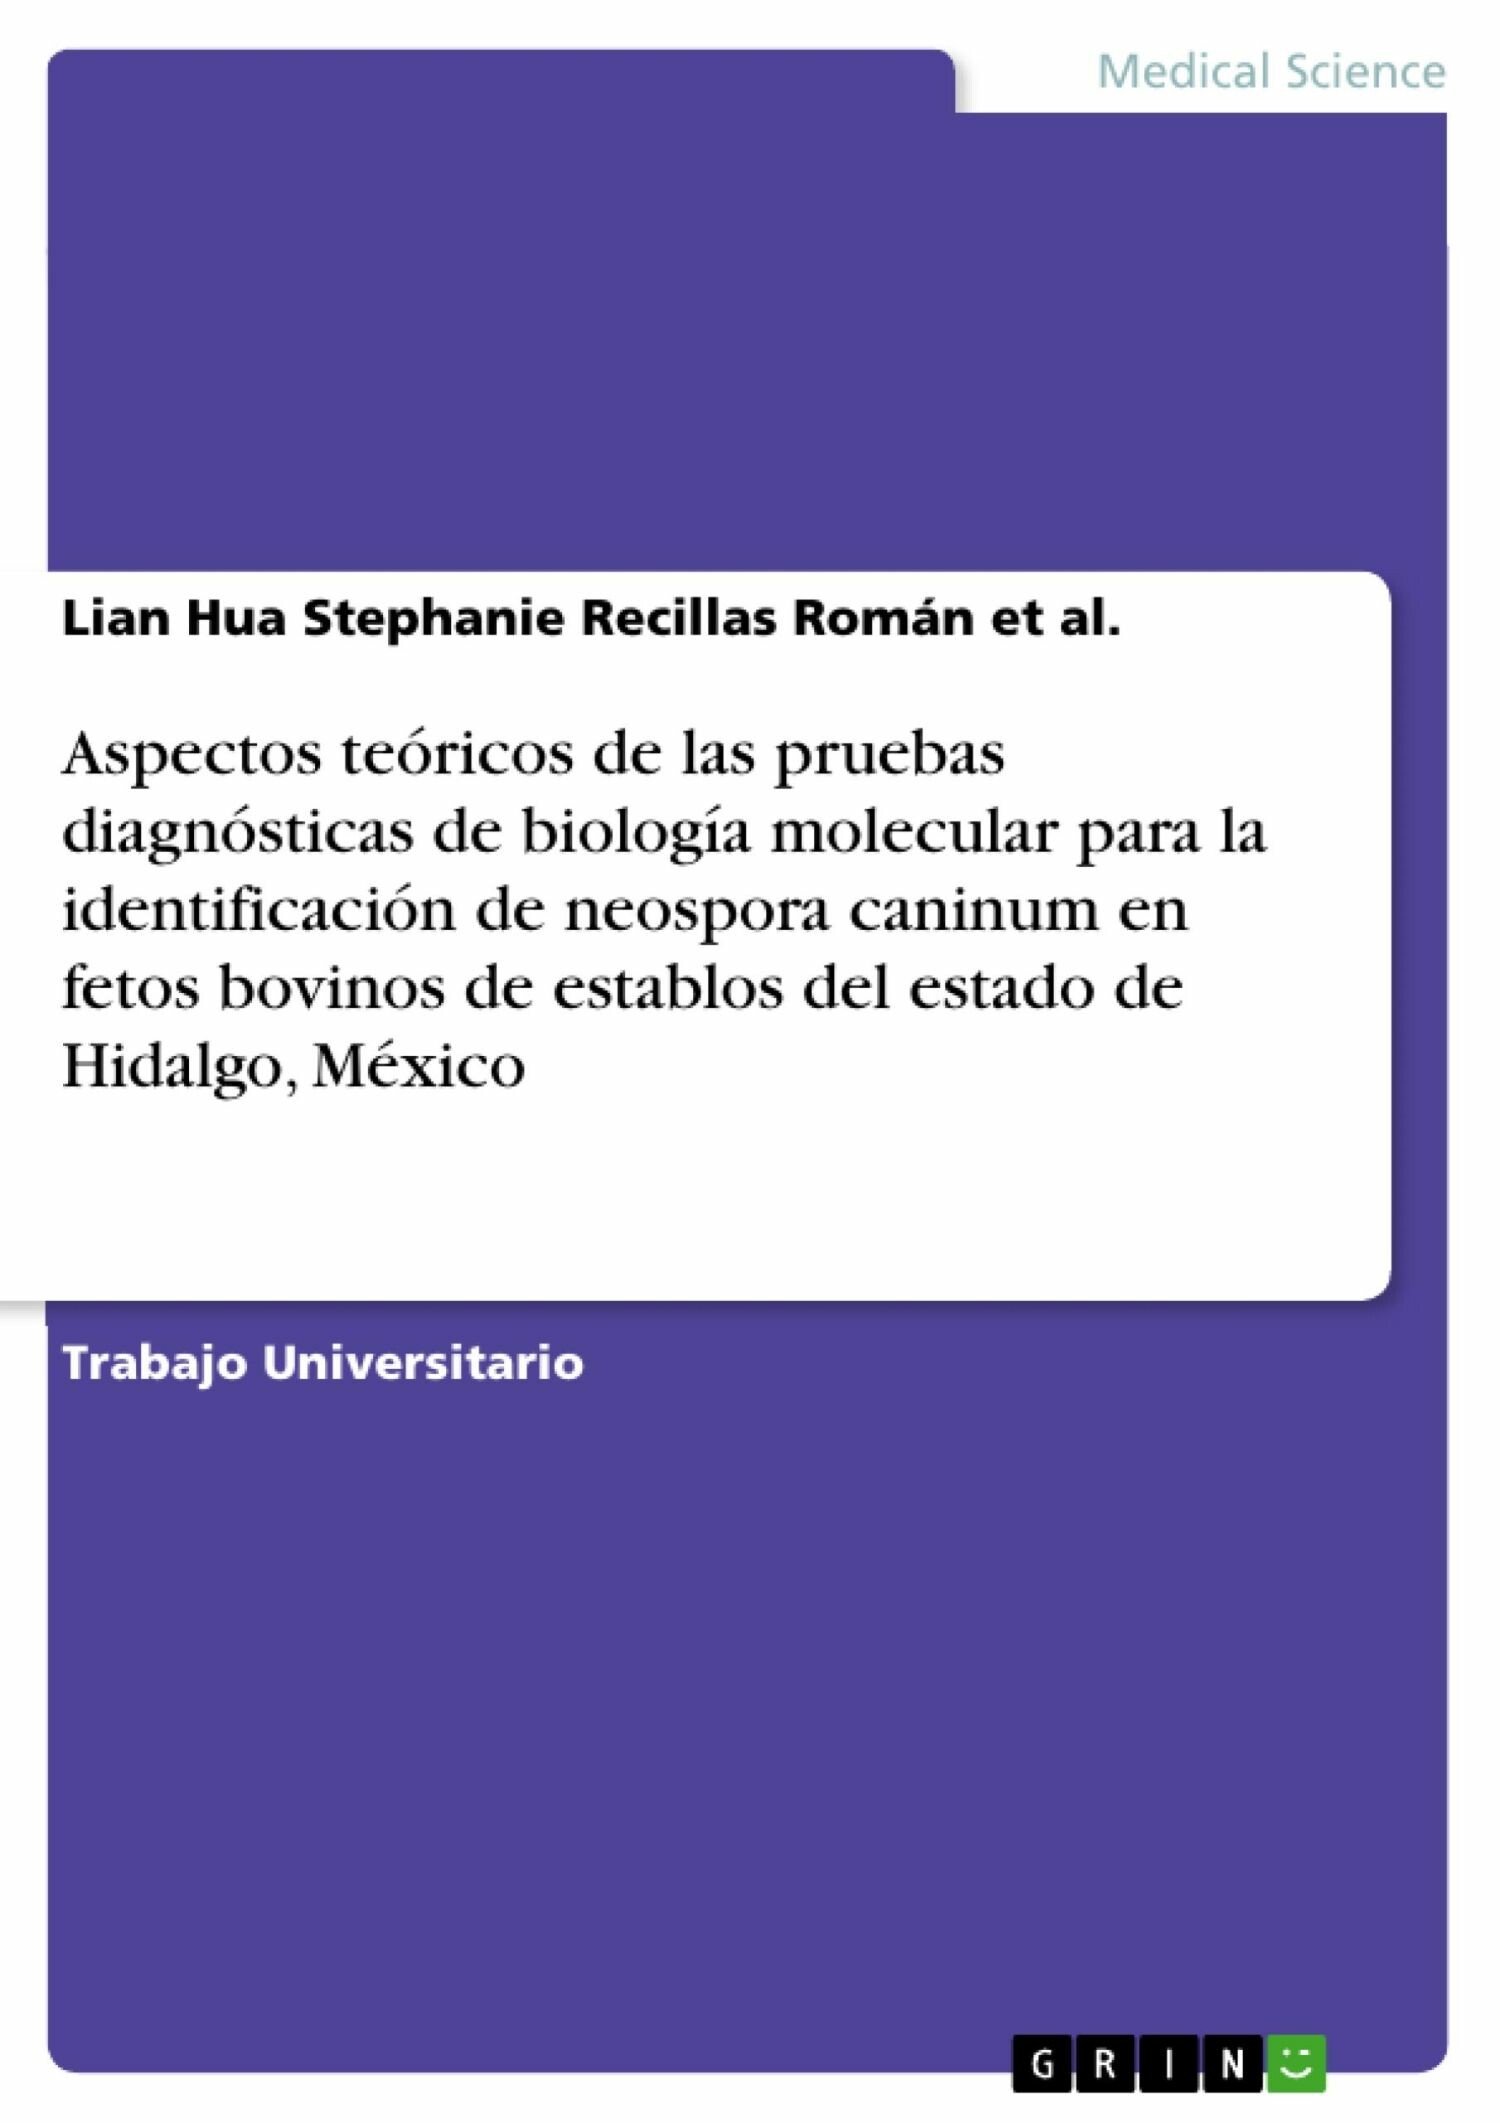 Aspectos teóricos de las pruebas diagnósticas de biología molecular para la identificación de neospora caninum en fetos bovinos de establos del estado de Hidalgo, México